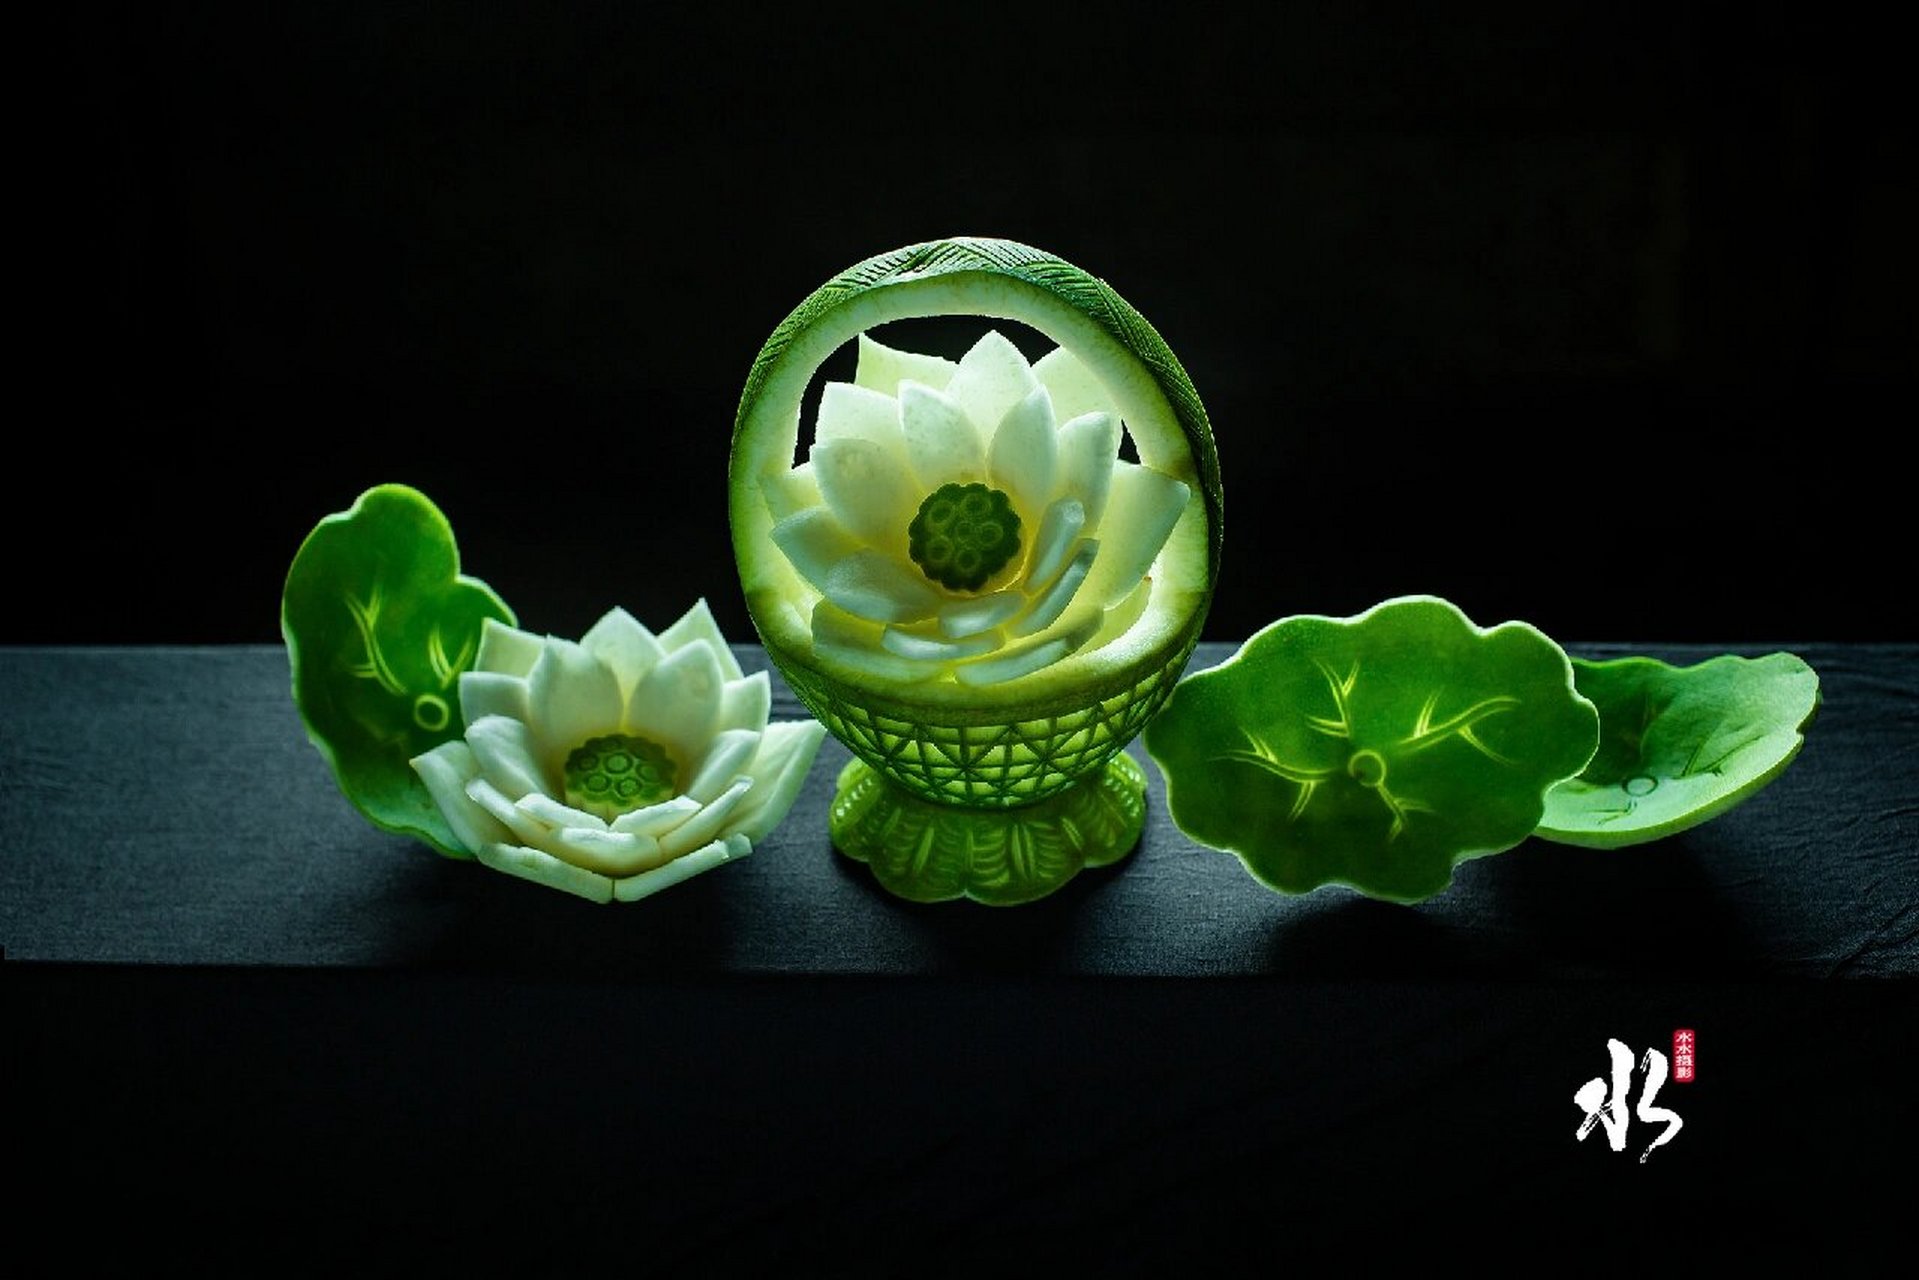 靖州雕花蜜饯 靖州雕花蜜饯是美食文化与民族文化完美结合的民间艺术